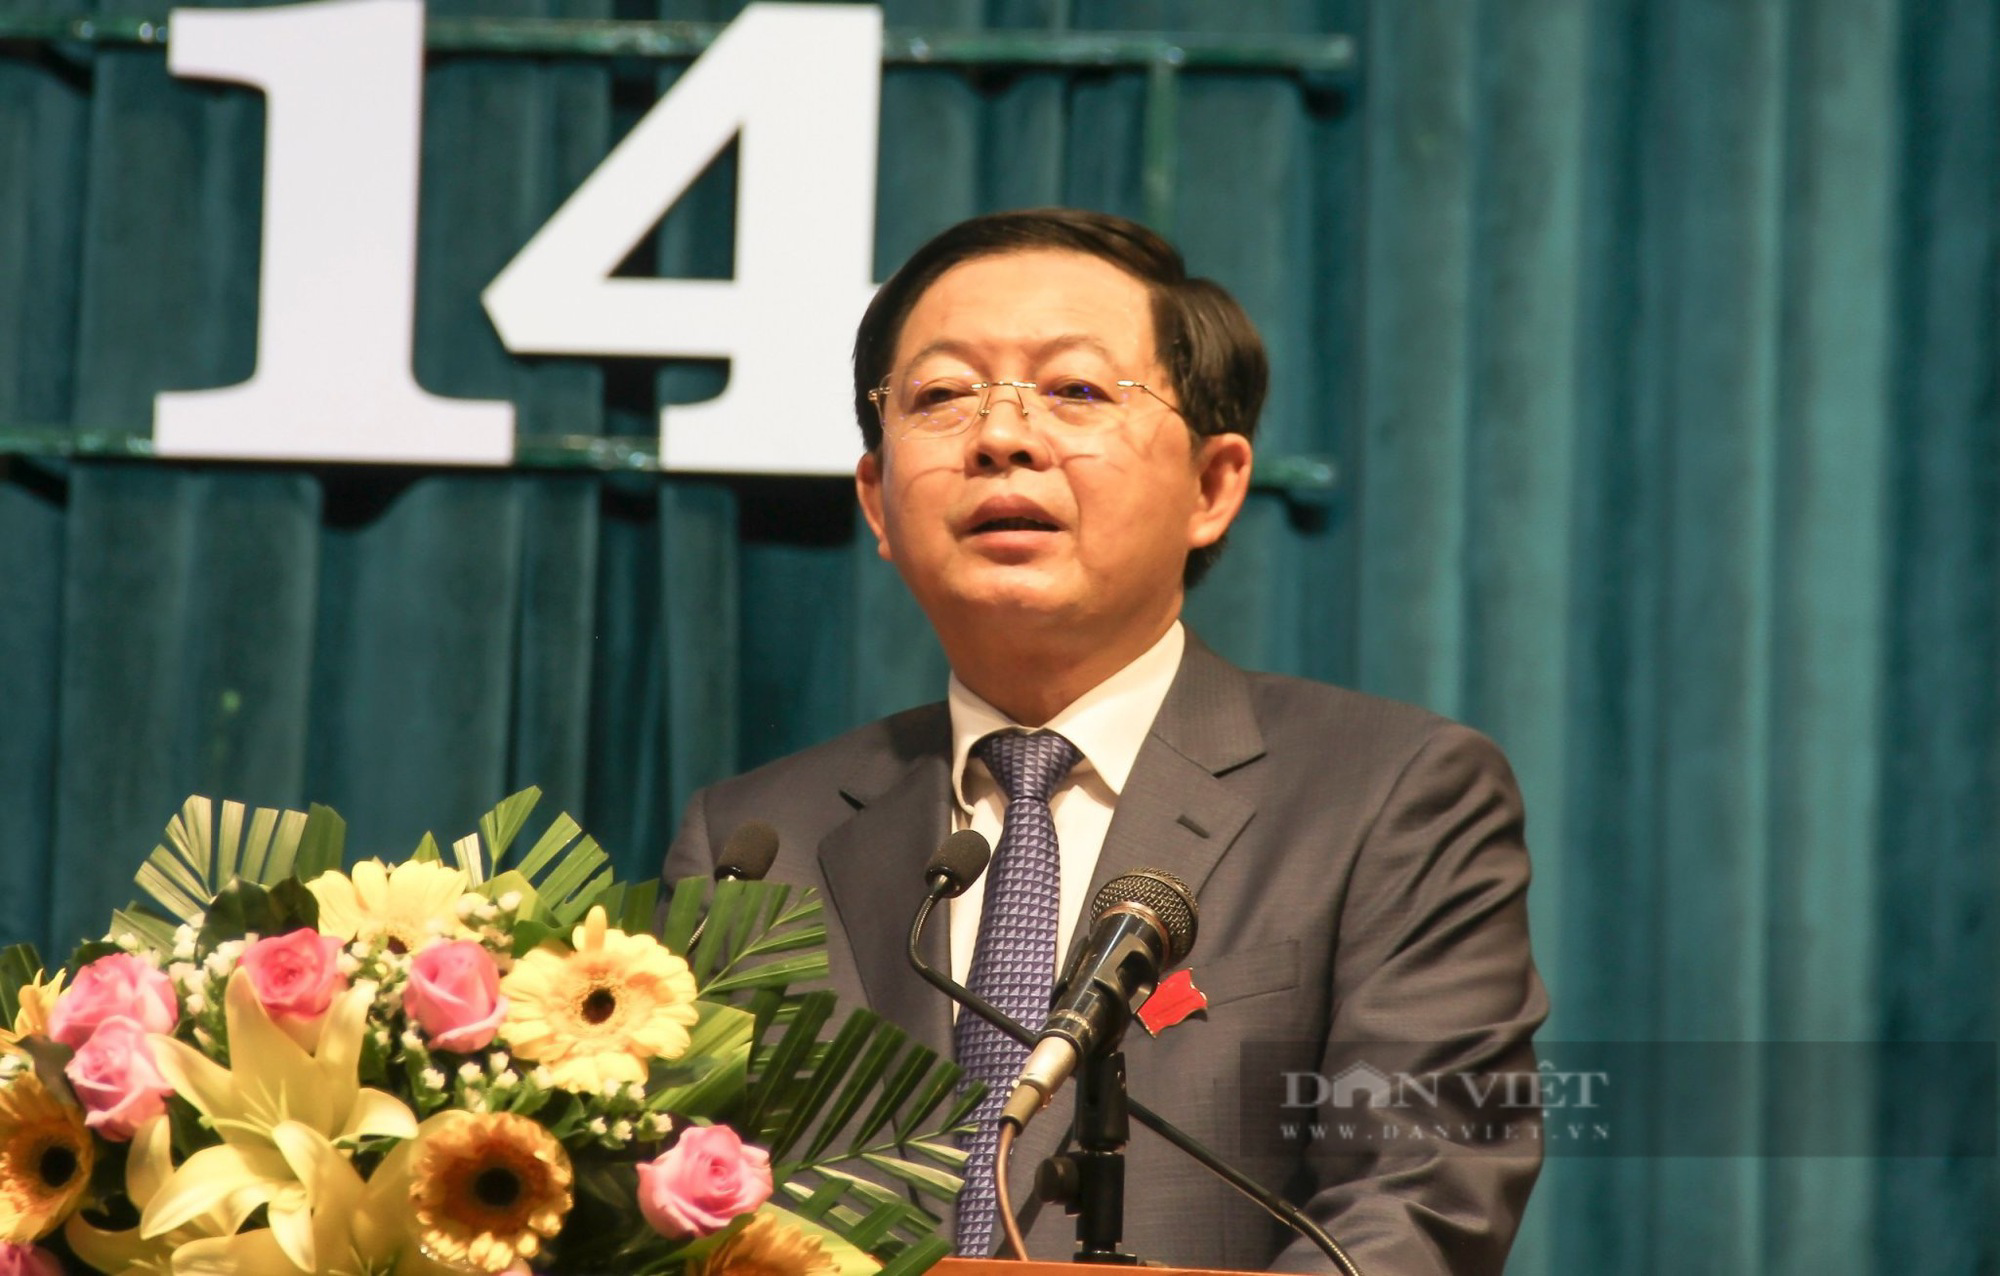 Bí thư Tỉnh ủy Bình Định có phiếu tín nhiệm cao nhiều nhất, tỷ lệ 98,1% - Ảnh 1.